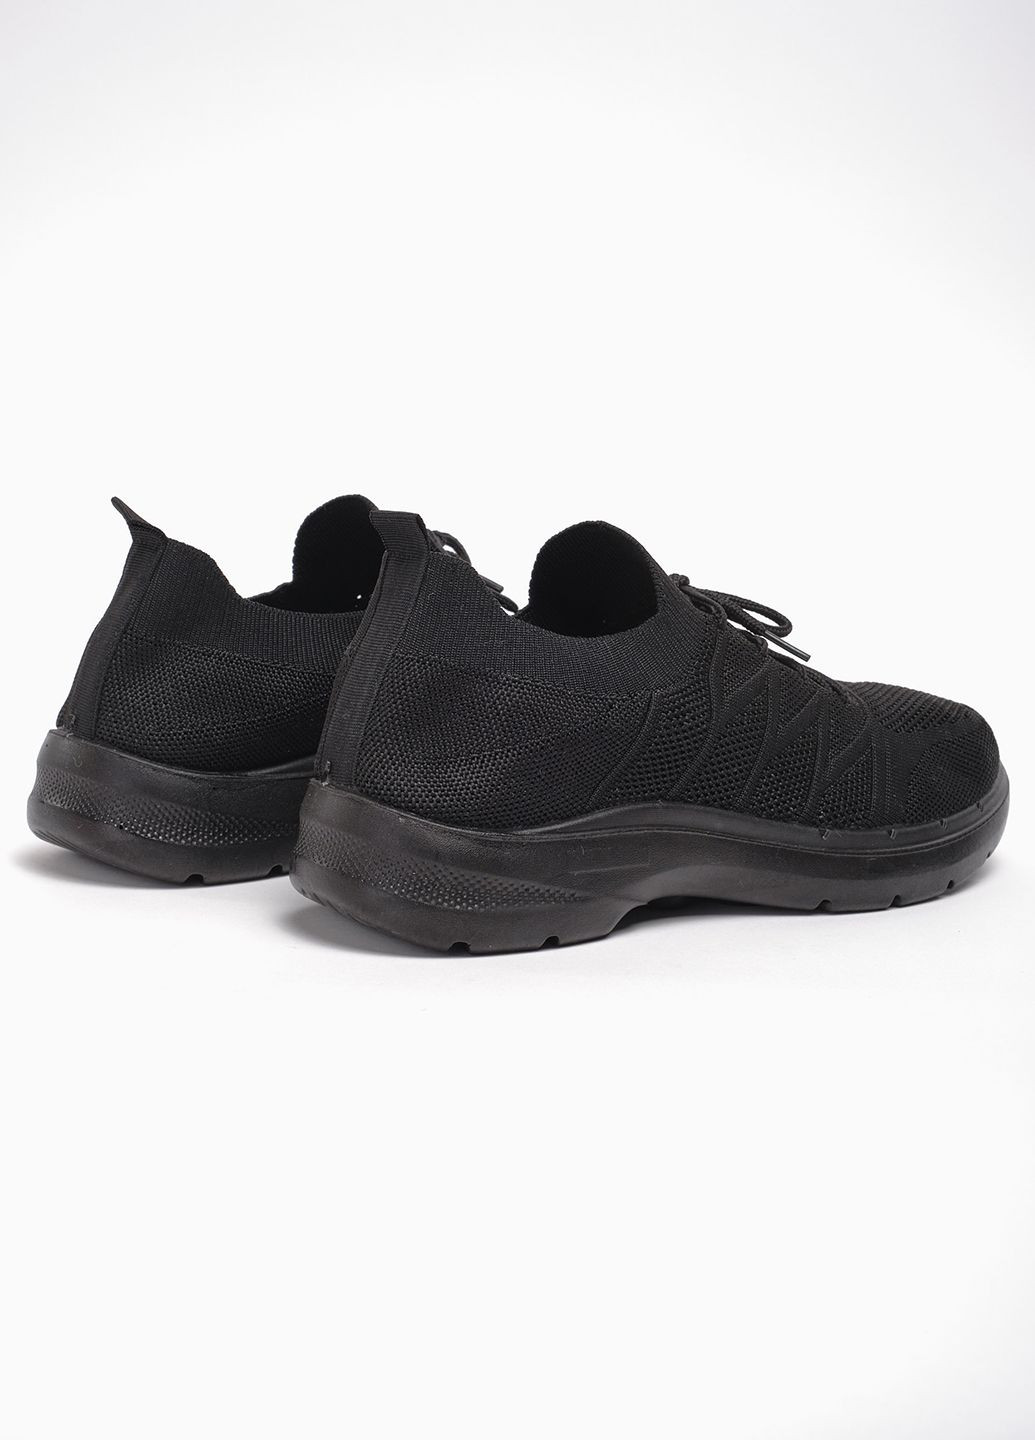 Черные летние кроссовки спорт m04-1 текстиль черный норма 342848 Power